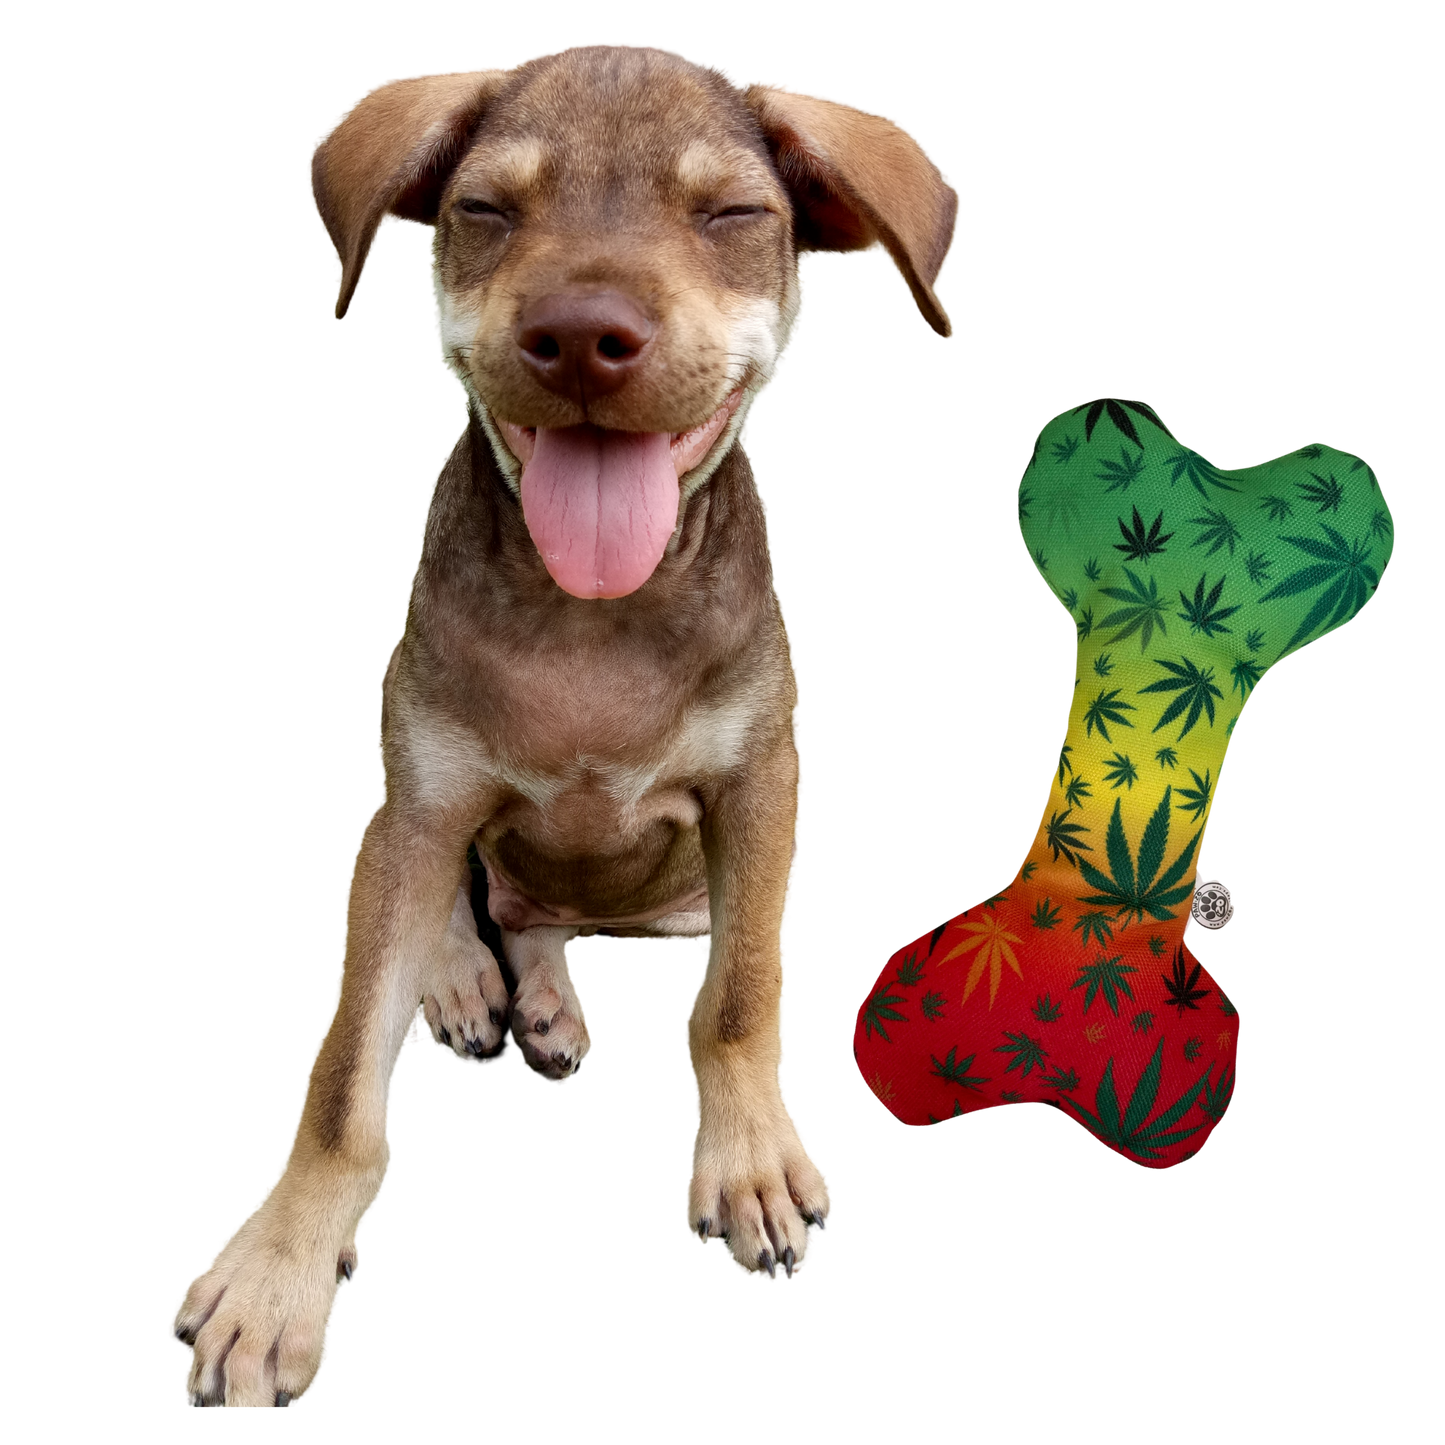 PAW:20 - Stoned to da Bone 420 Dog Toy 🐶  Marijuana, Weed Themed  Image